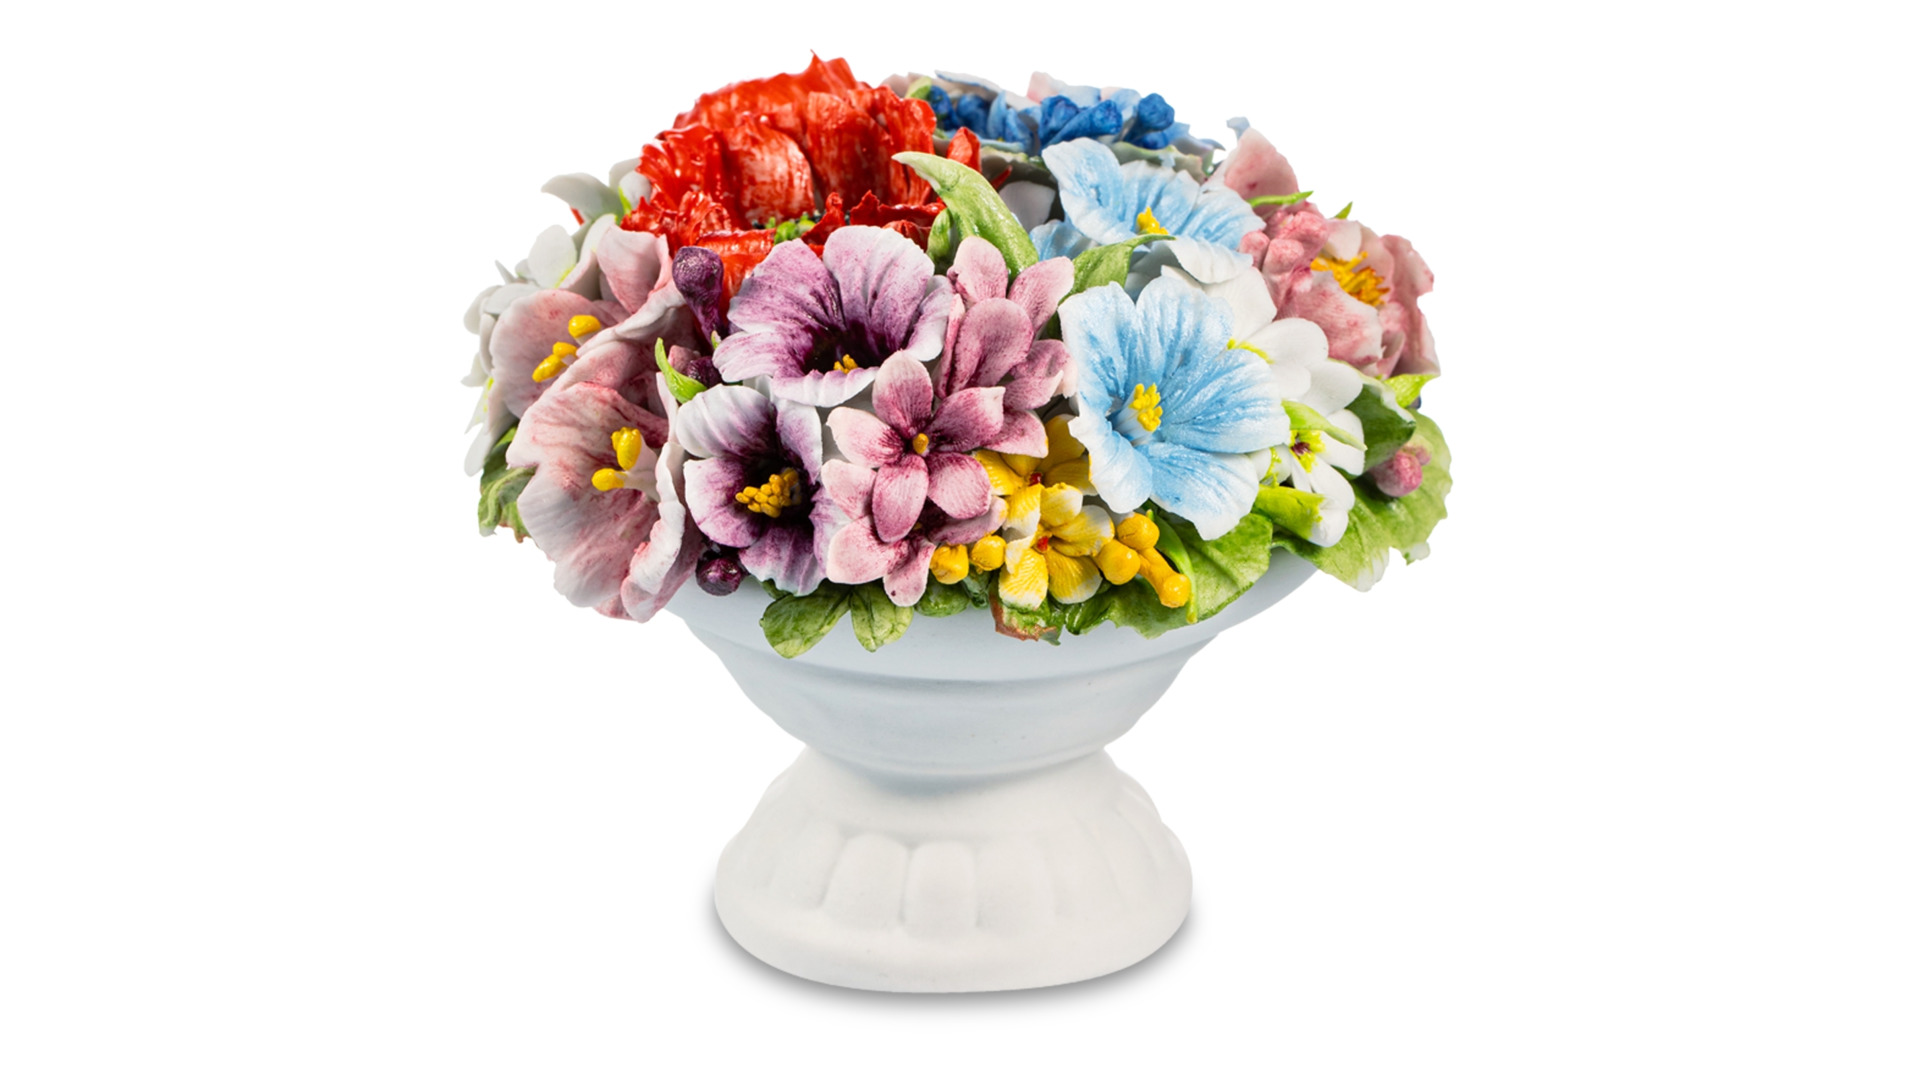 Сувенир Delta-X Полевые цветы Корзина с цветами №7 9 см, фарфор, бежевая